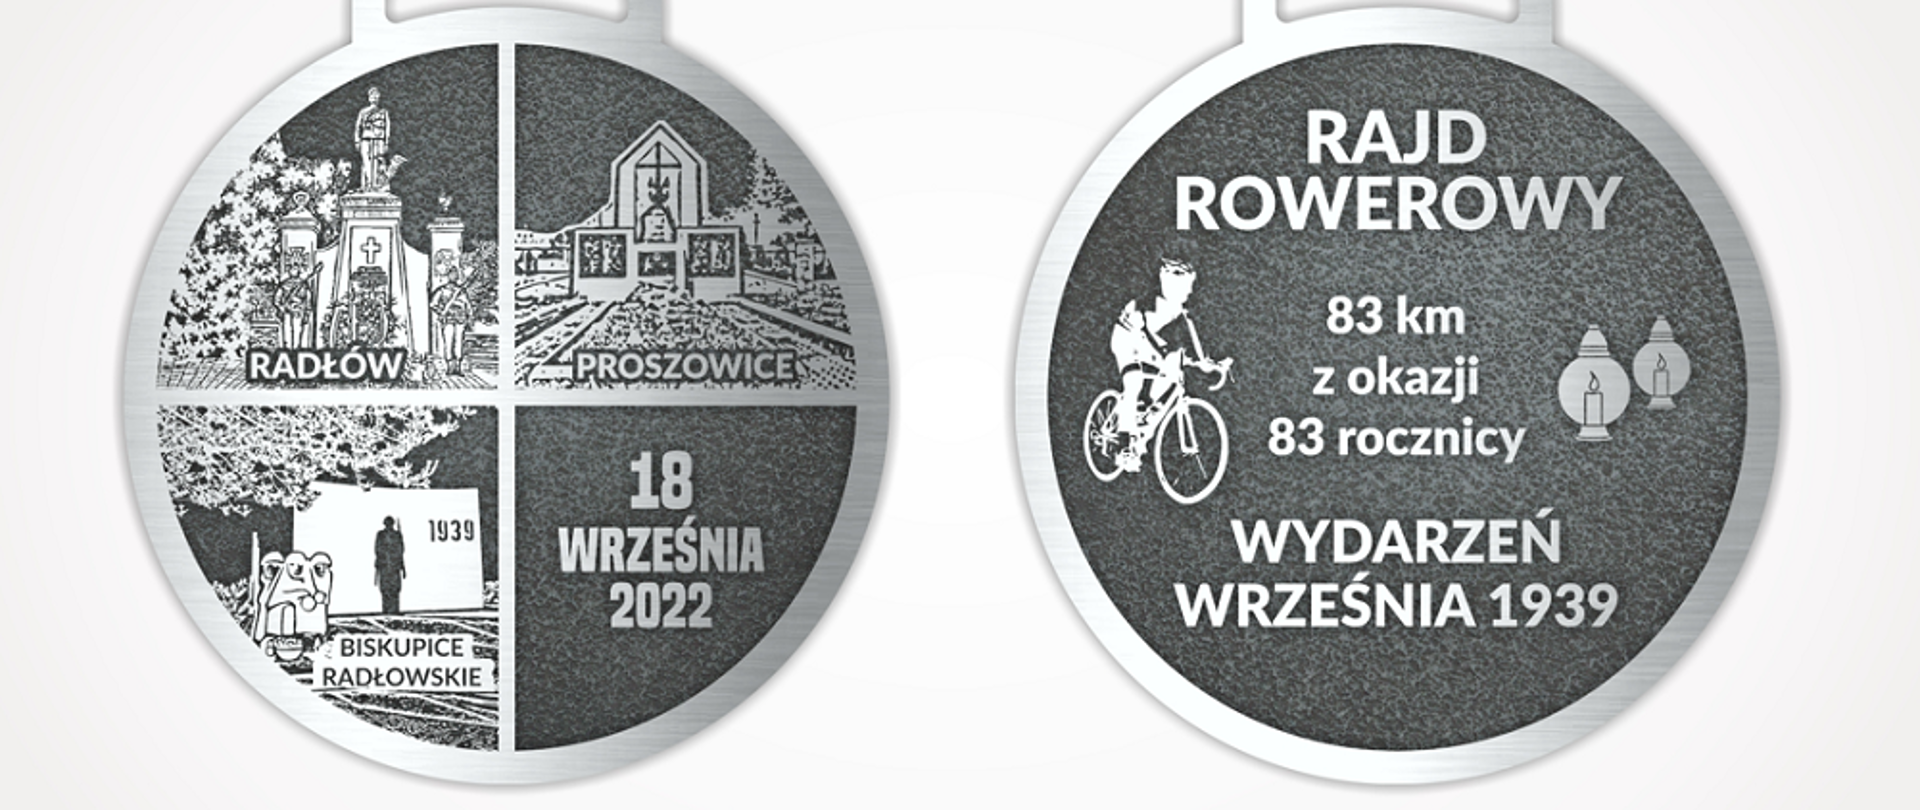 Na białym tle awers i rewers medalu dla uczestników rajdu rowerowego upamiętniający wydarzenia z września 1939 roku.
Z lewej strony awers podzielony na cztery części: lewy górny róg pomnik w Radłowie, prawy górny róg pomnik poległych w Proszowicach, lewy dolny róg pomnik ku czci poległych w Biskupicach Radłowskich, prawy dolny róg data rajdu- 18 września 2022.
Z prawej strony awers medalu przedstawiający rowerzystę, na przeciwko 2 znicze, pośrodku napis Rajd Rowerowy 83 km z okazji 83 rocznicy Wydarzeń września 1939.